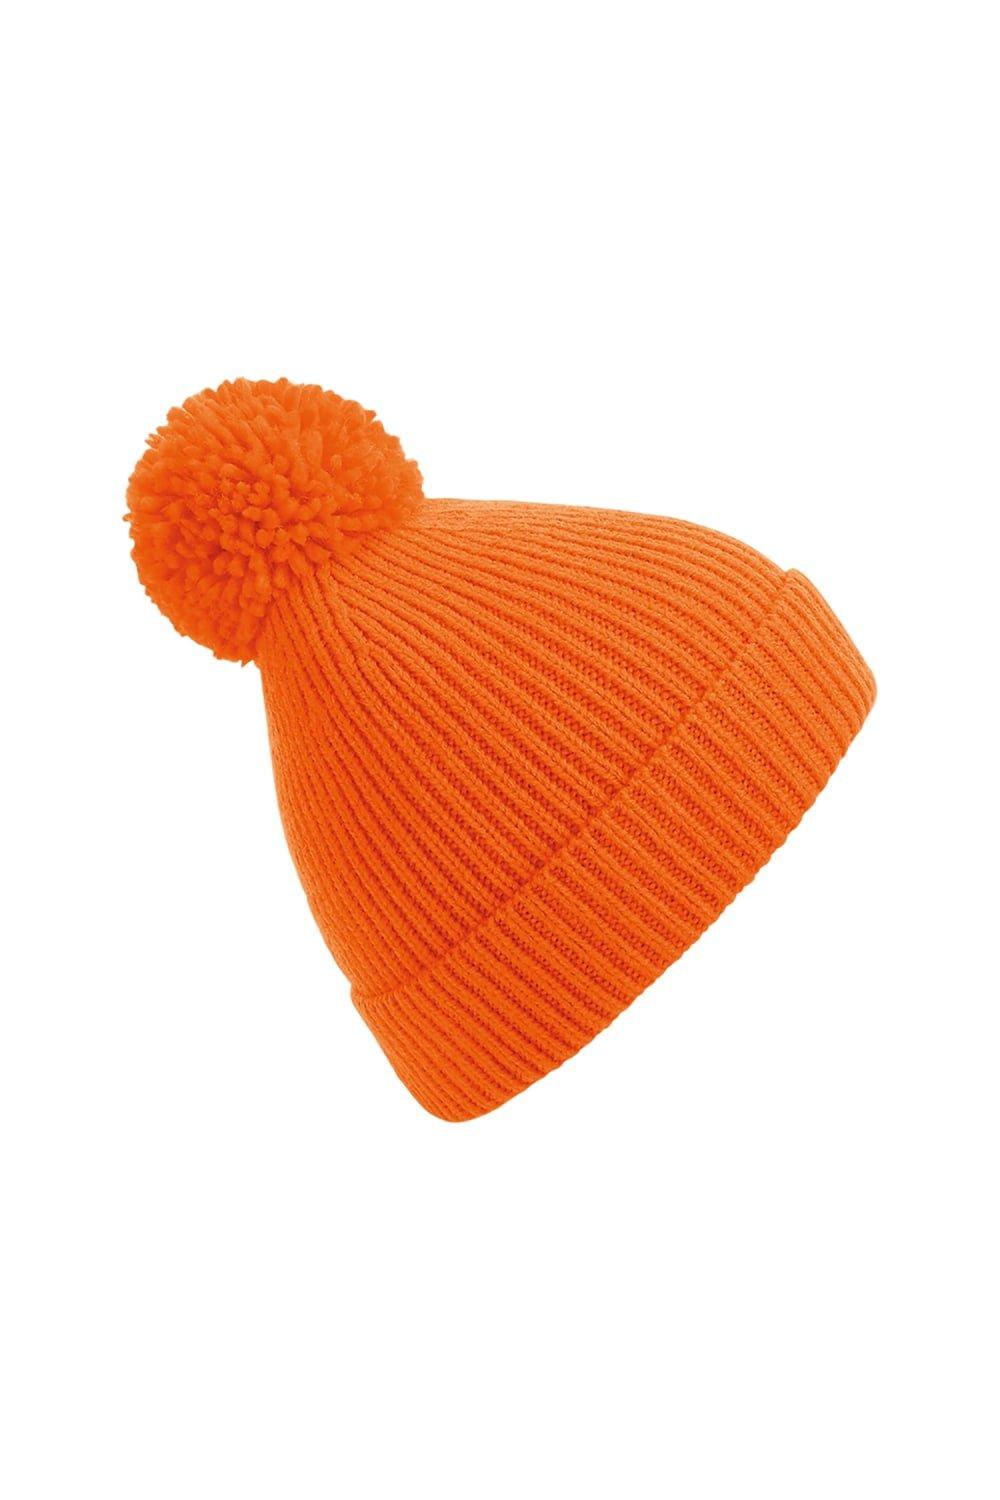 Вязаная шапка Engineered в рубчик с помпонами Beechfield, оранжевый